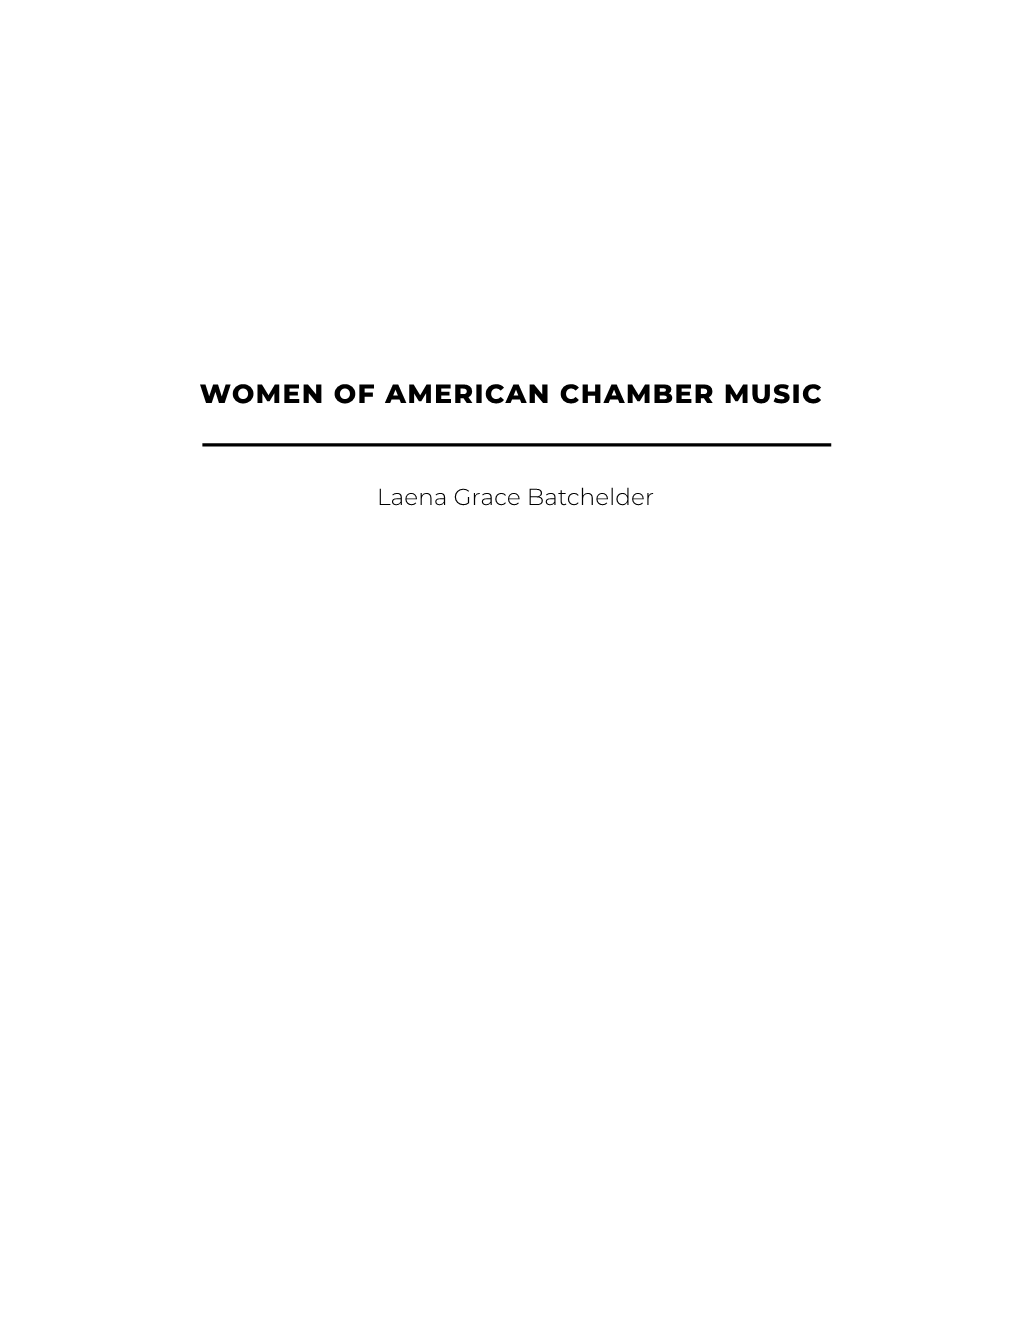 Women of American Chamber Music